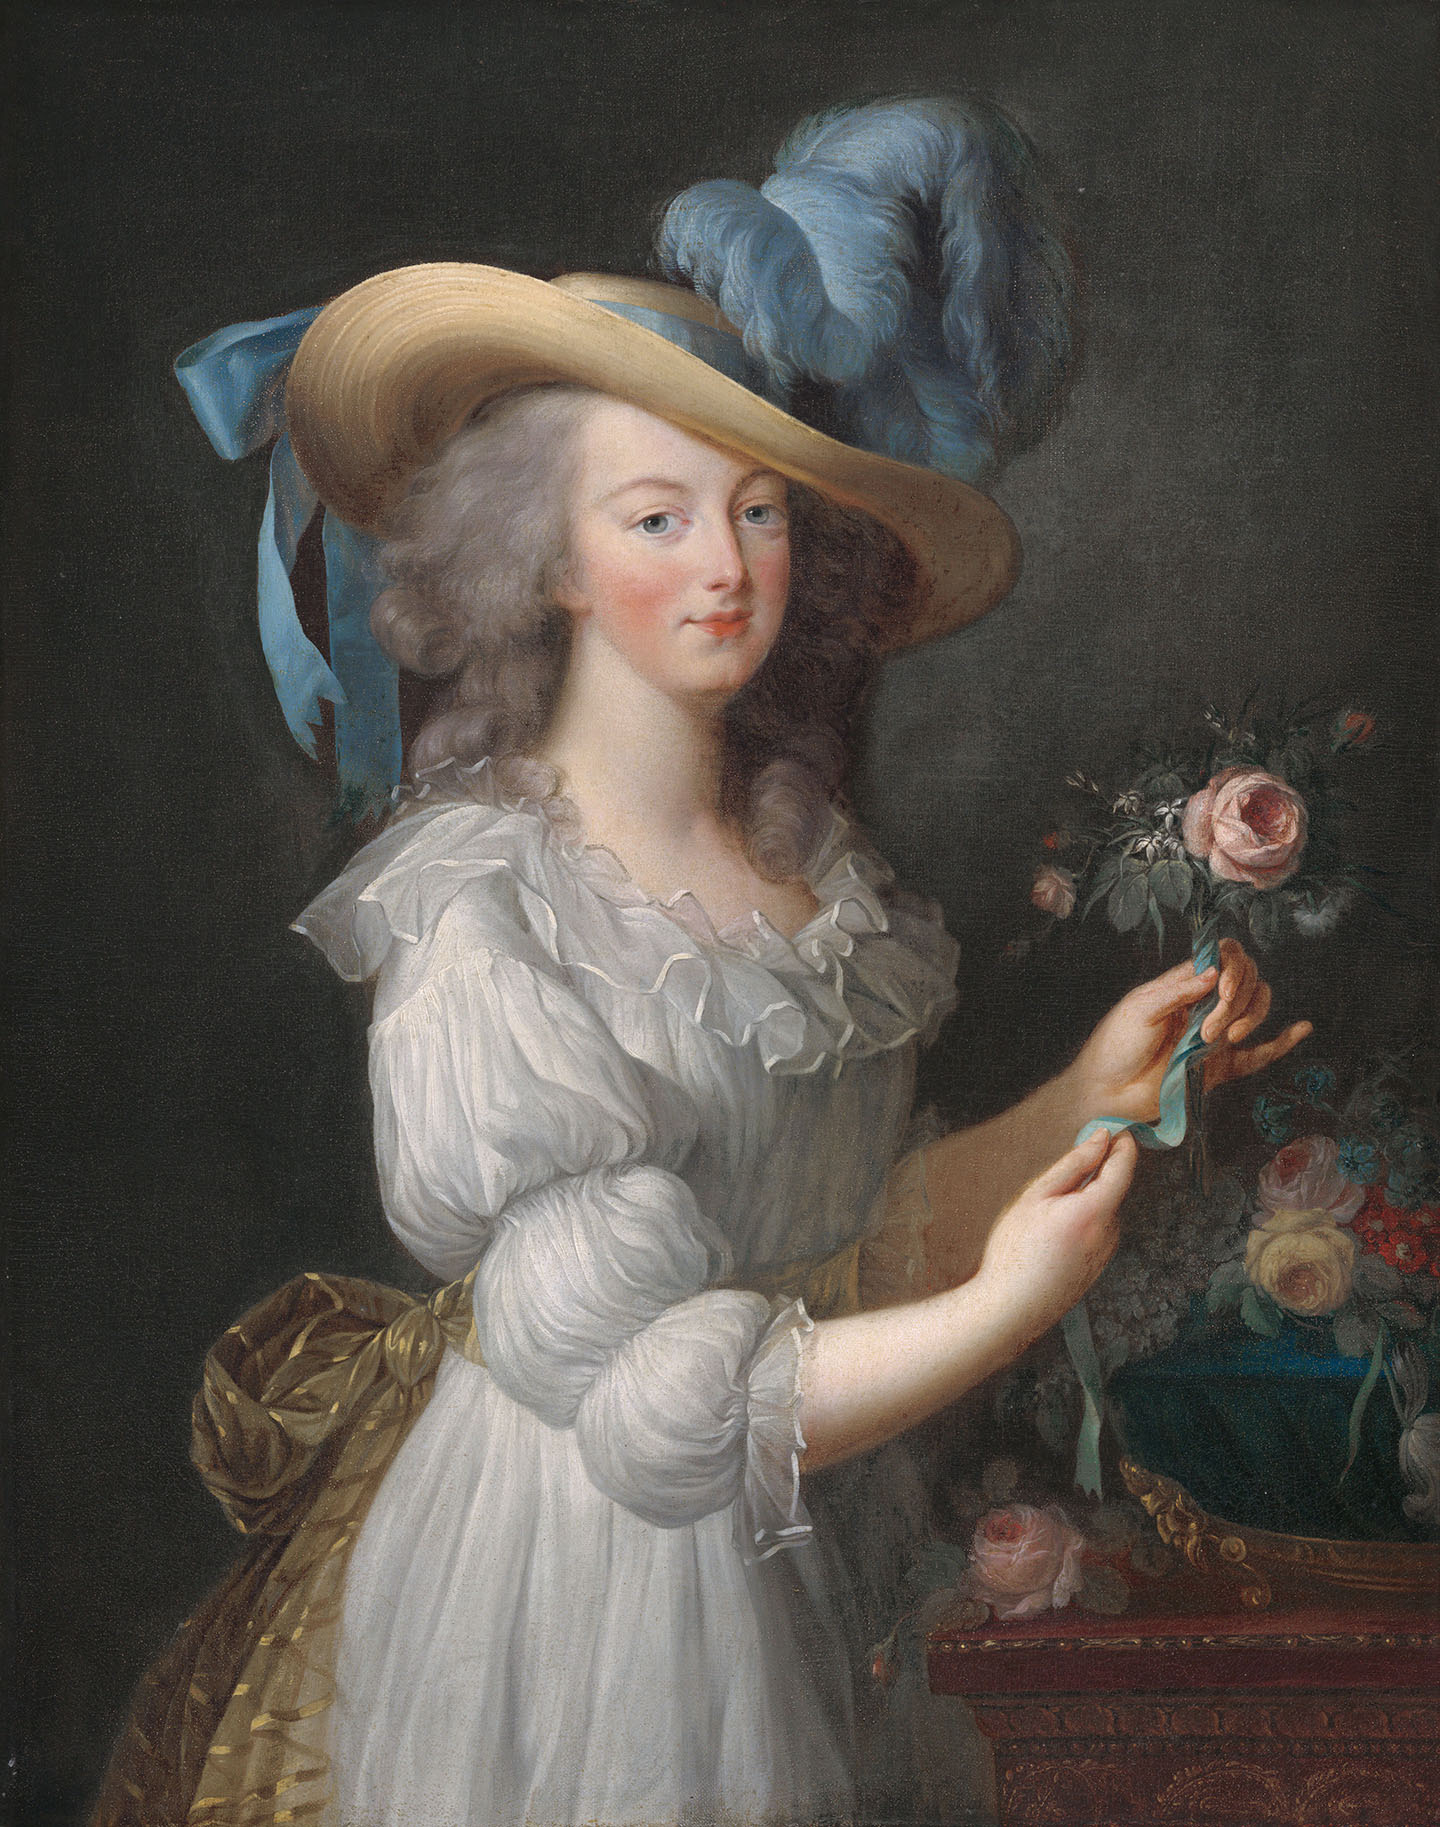 Bức tranh “Marie Antoinette in a Chemise Dress” (Nữ hoàng Marie Antoinette trong chiếc váy chemise) của một họa sĩ ẩn danh thực hiện sau năm 1783, sau họa sĩ Élisabeth-Louise Vigée Le Brun. Tranh sơn dầu trên vải canvas. Bộ sưu tập Timken, Phòng trưng bày Nghệ thuật Quốc gia, Hoa Thịnh Đốn. (Ảnh: Tài liệu công cộng)